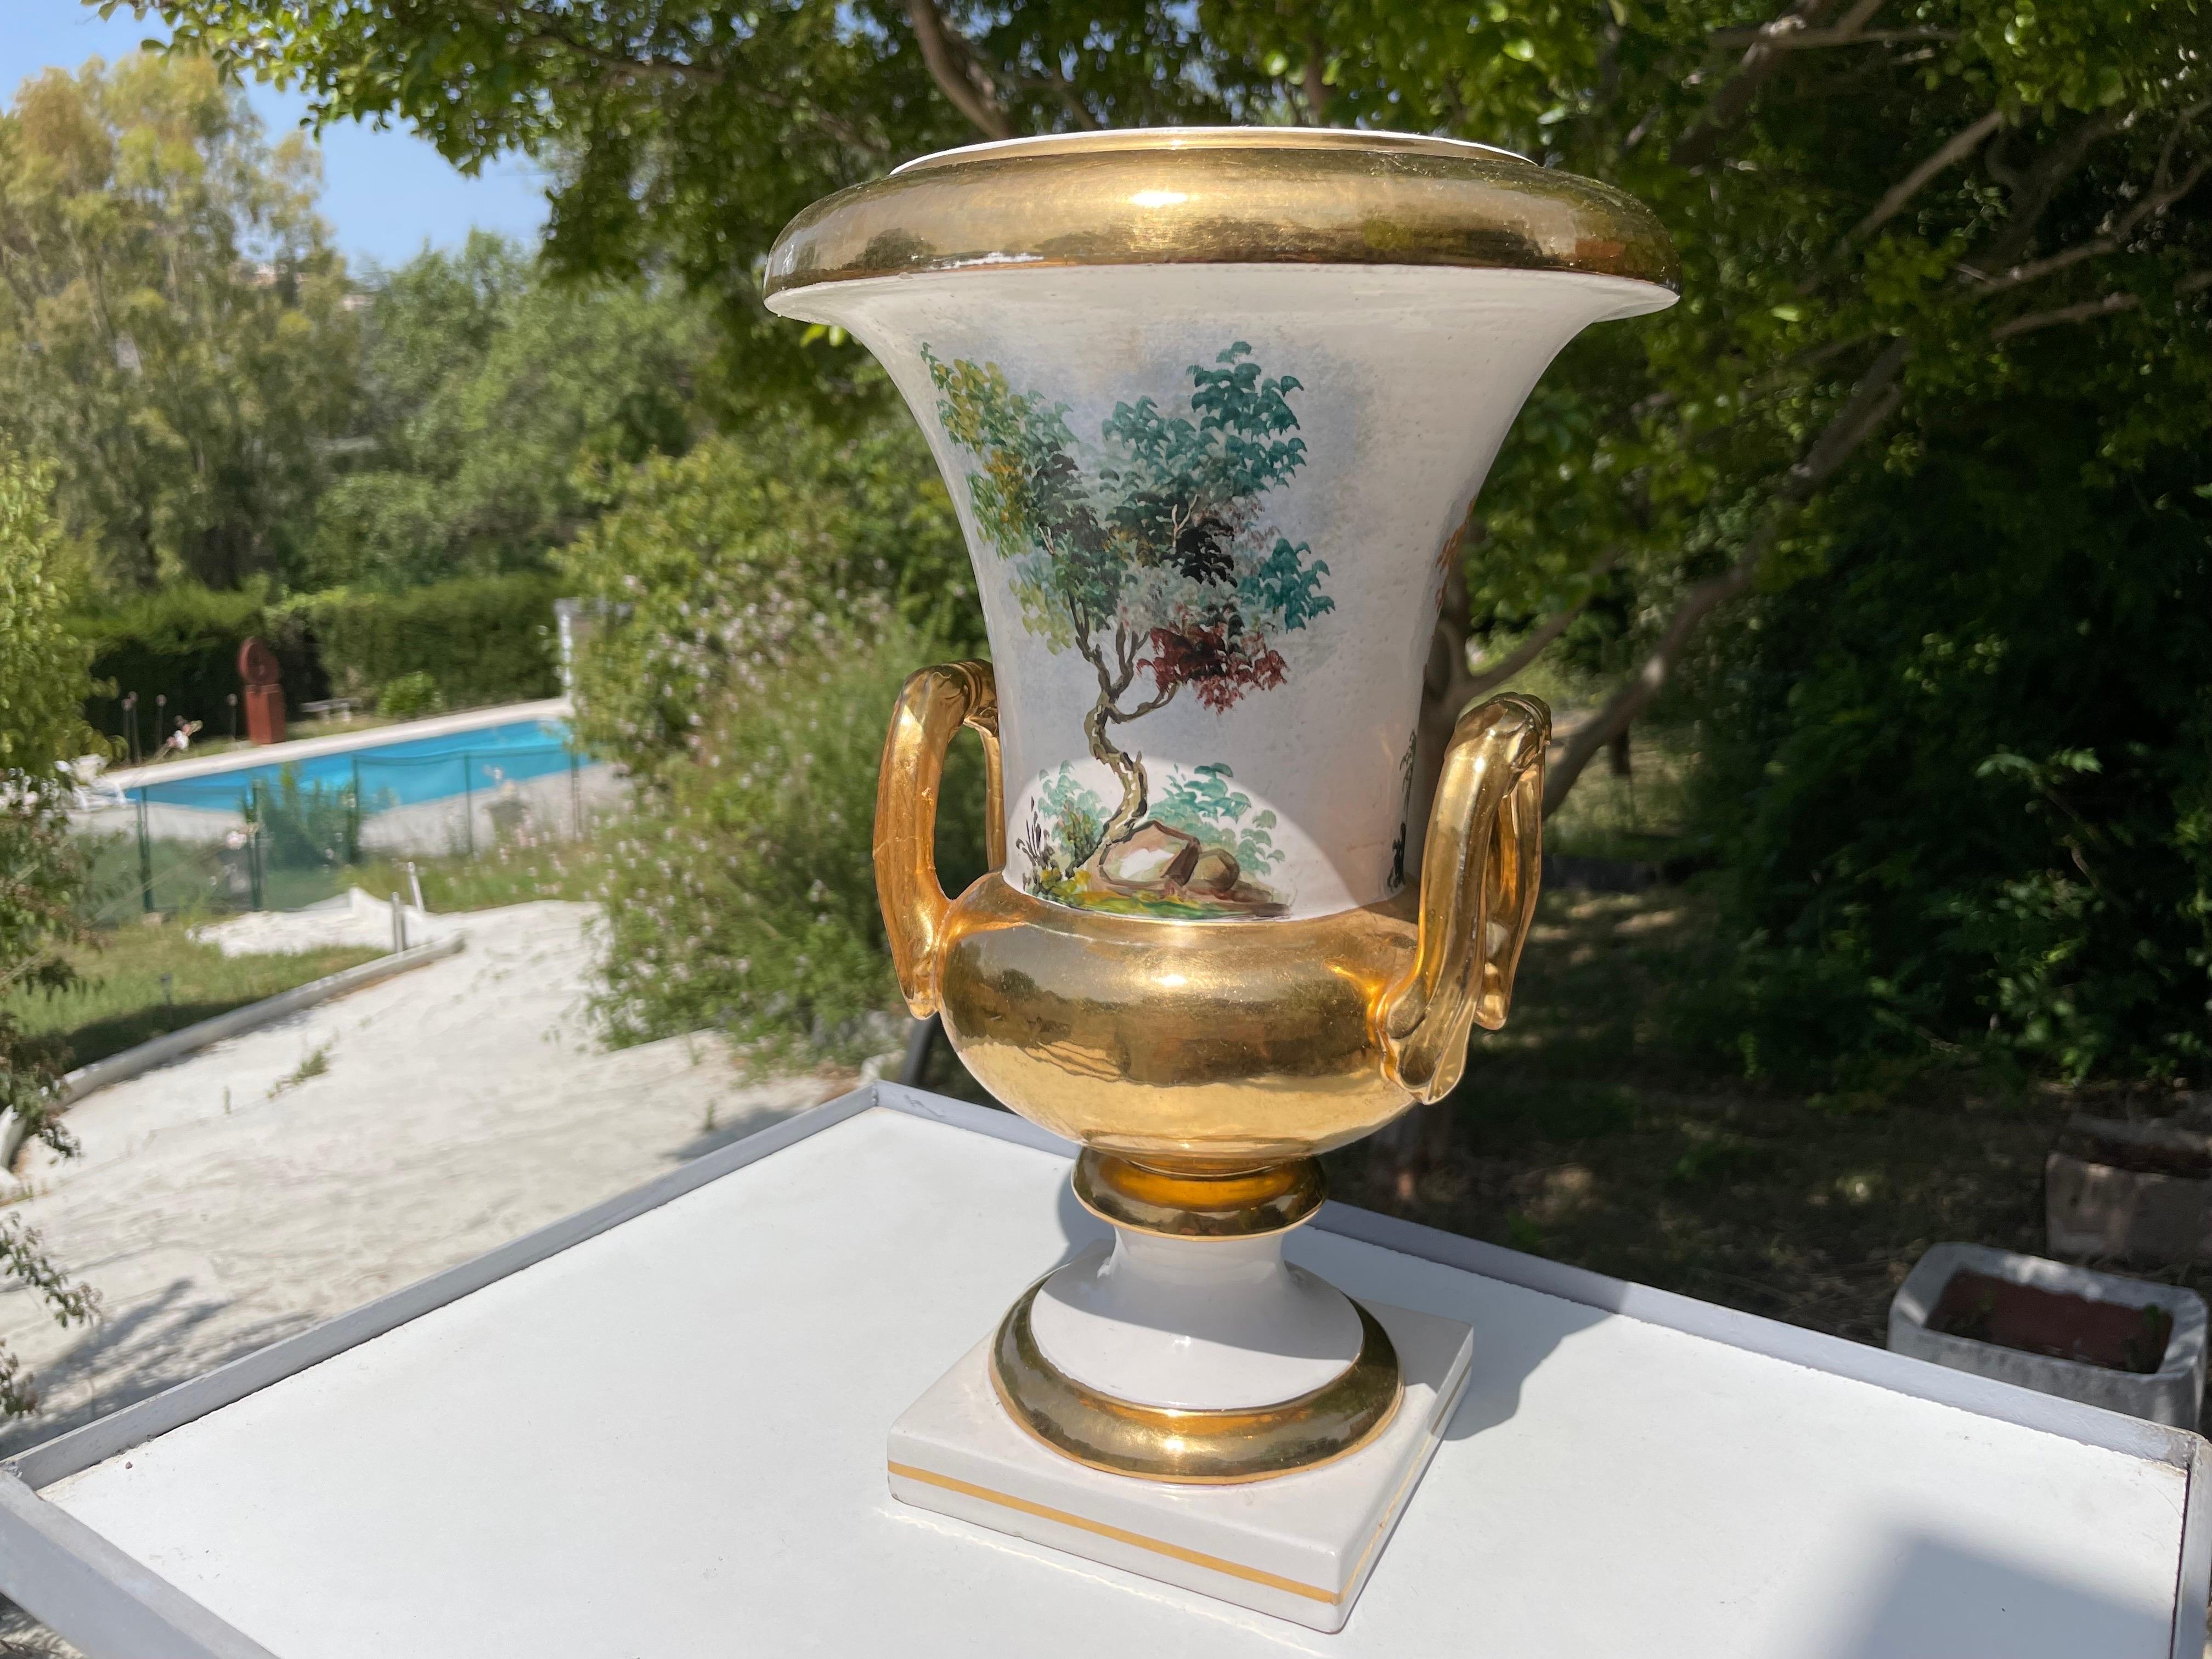 Diese Vasen sind aus Porzellan, stammen aus dem 19. Jahrhundert und wurden in Italien von einem bekannten Designer namens Carbet hergestellt.
Es handelt sich um Vasen im neoklassischen Stil, die von Hand bemalt und mit Blattgold überzogen